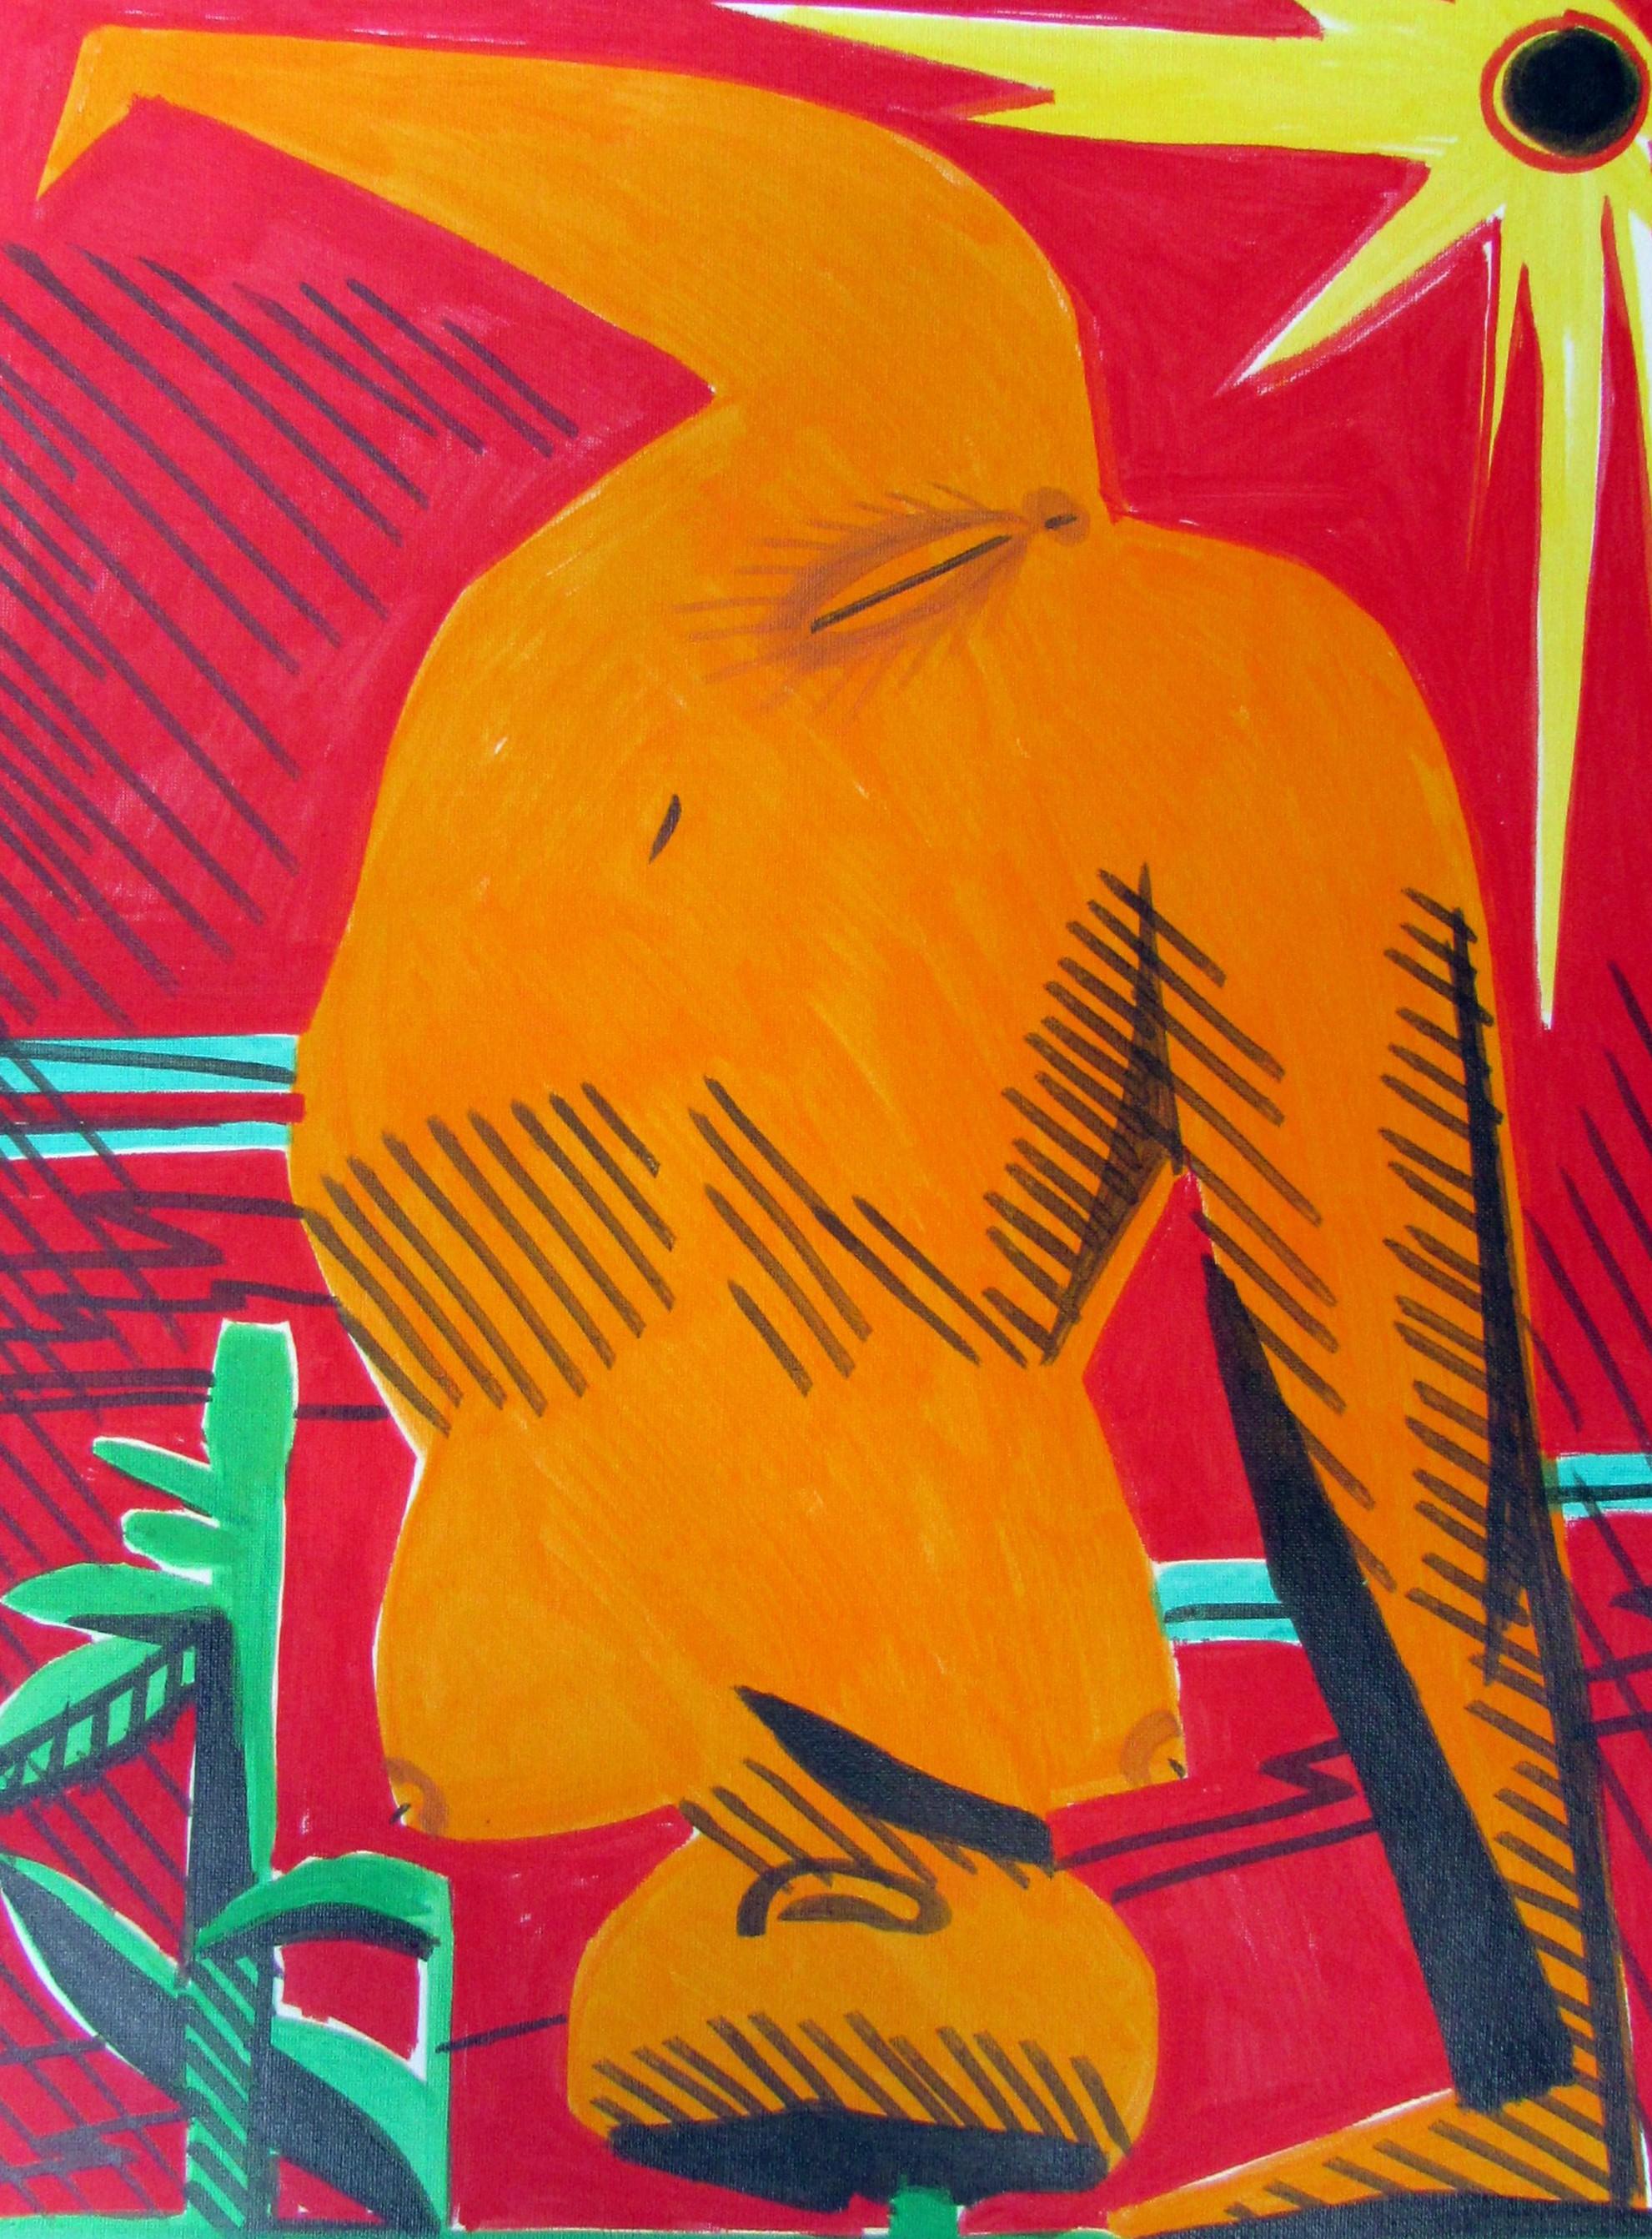 Seltsame Frauen V - Zeitgenössisch, Akt, Weiblich, Sonne, Orange, Rot, Figurative Kunst – Painting von Alexandru Rădvan